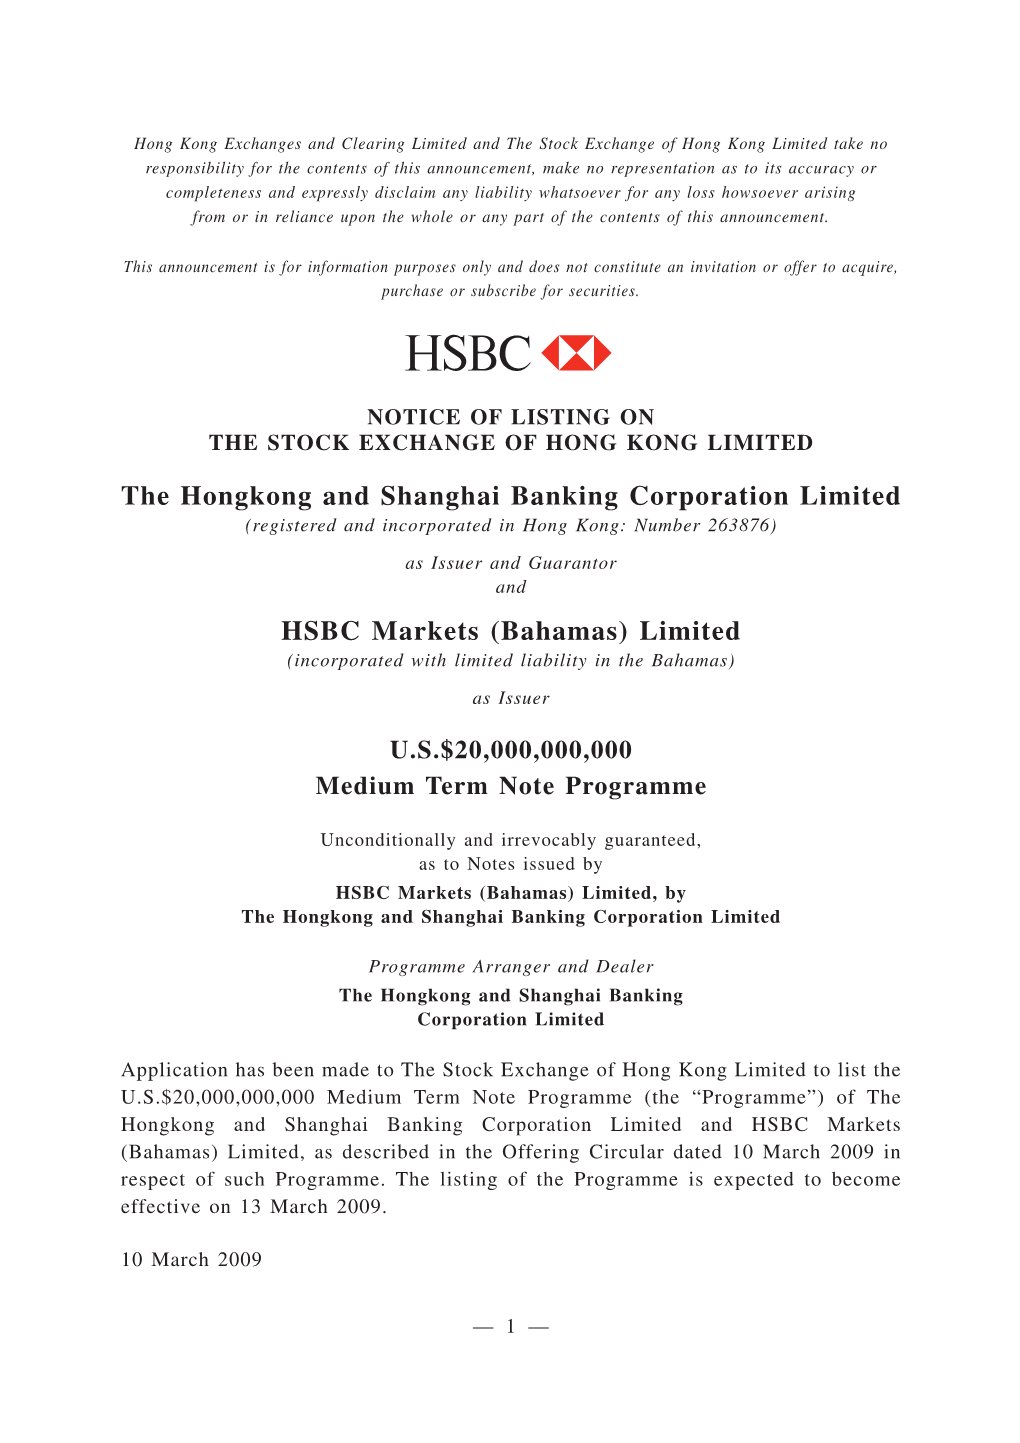 The Hongkong and Shanghai Banking Corporation Limited HSBC Markets